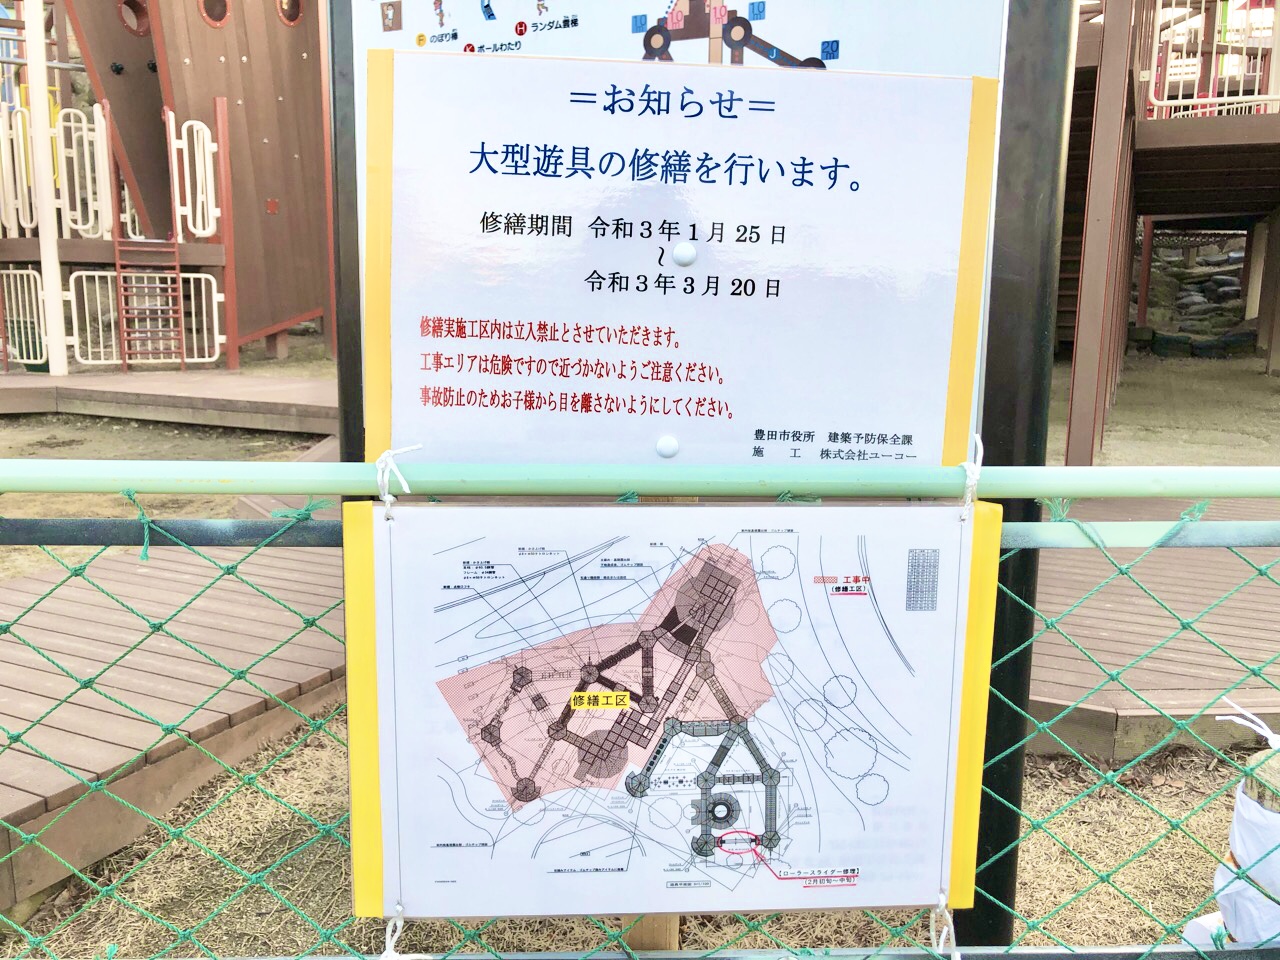 豊田市 ご注意ください 豊田スタジアム芝生広場 の大型遊具が 修繕のため使用エリアが一部となっています 号外net 豊田市